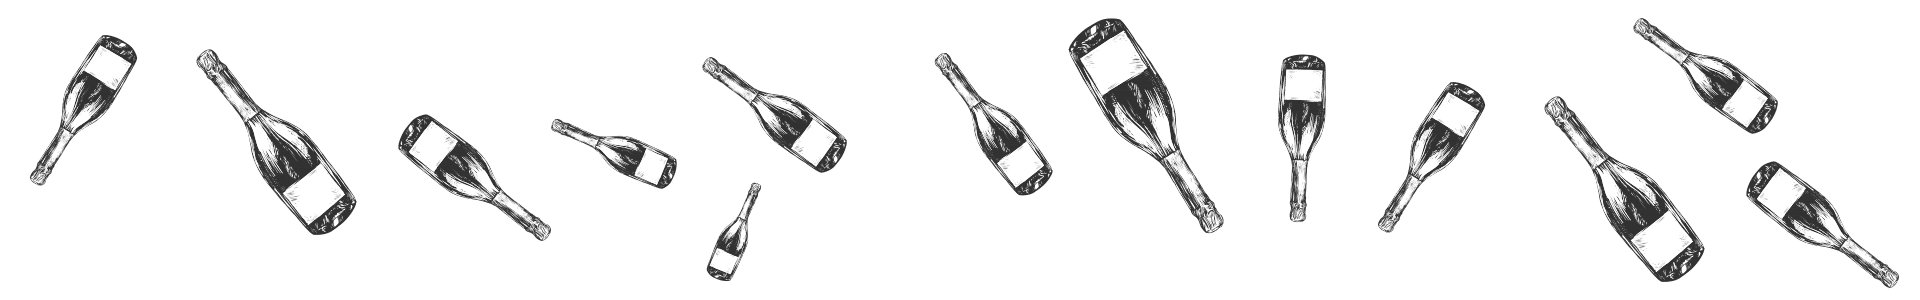 Champagne Joseph Perrier - Bannière accessoires